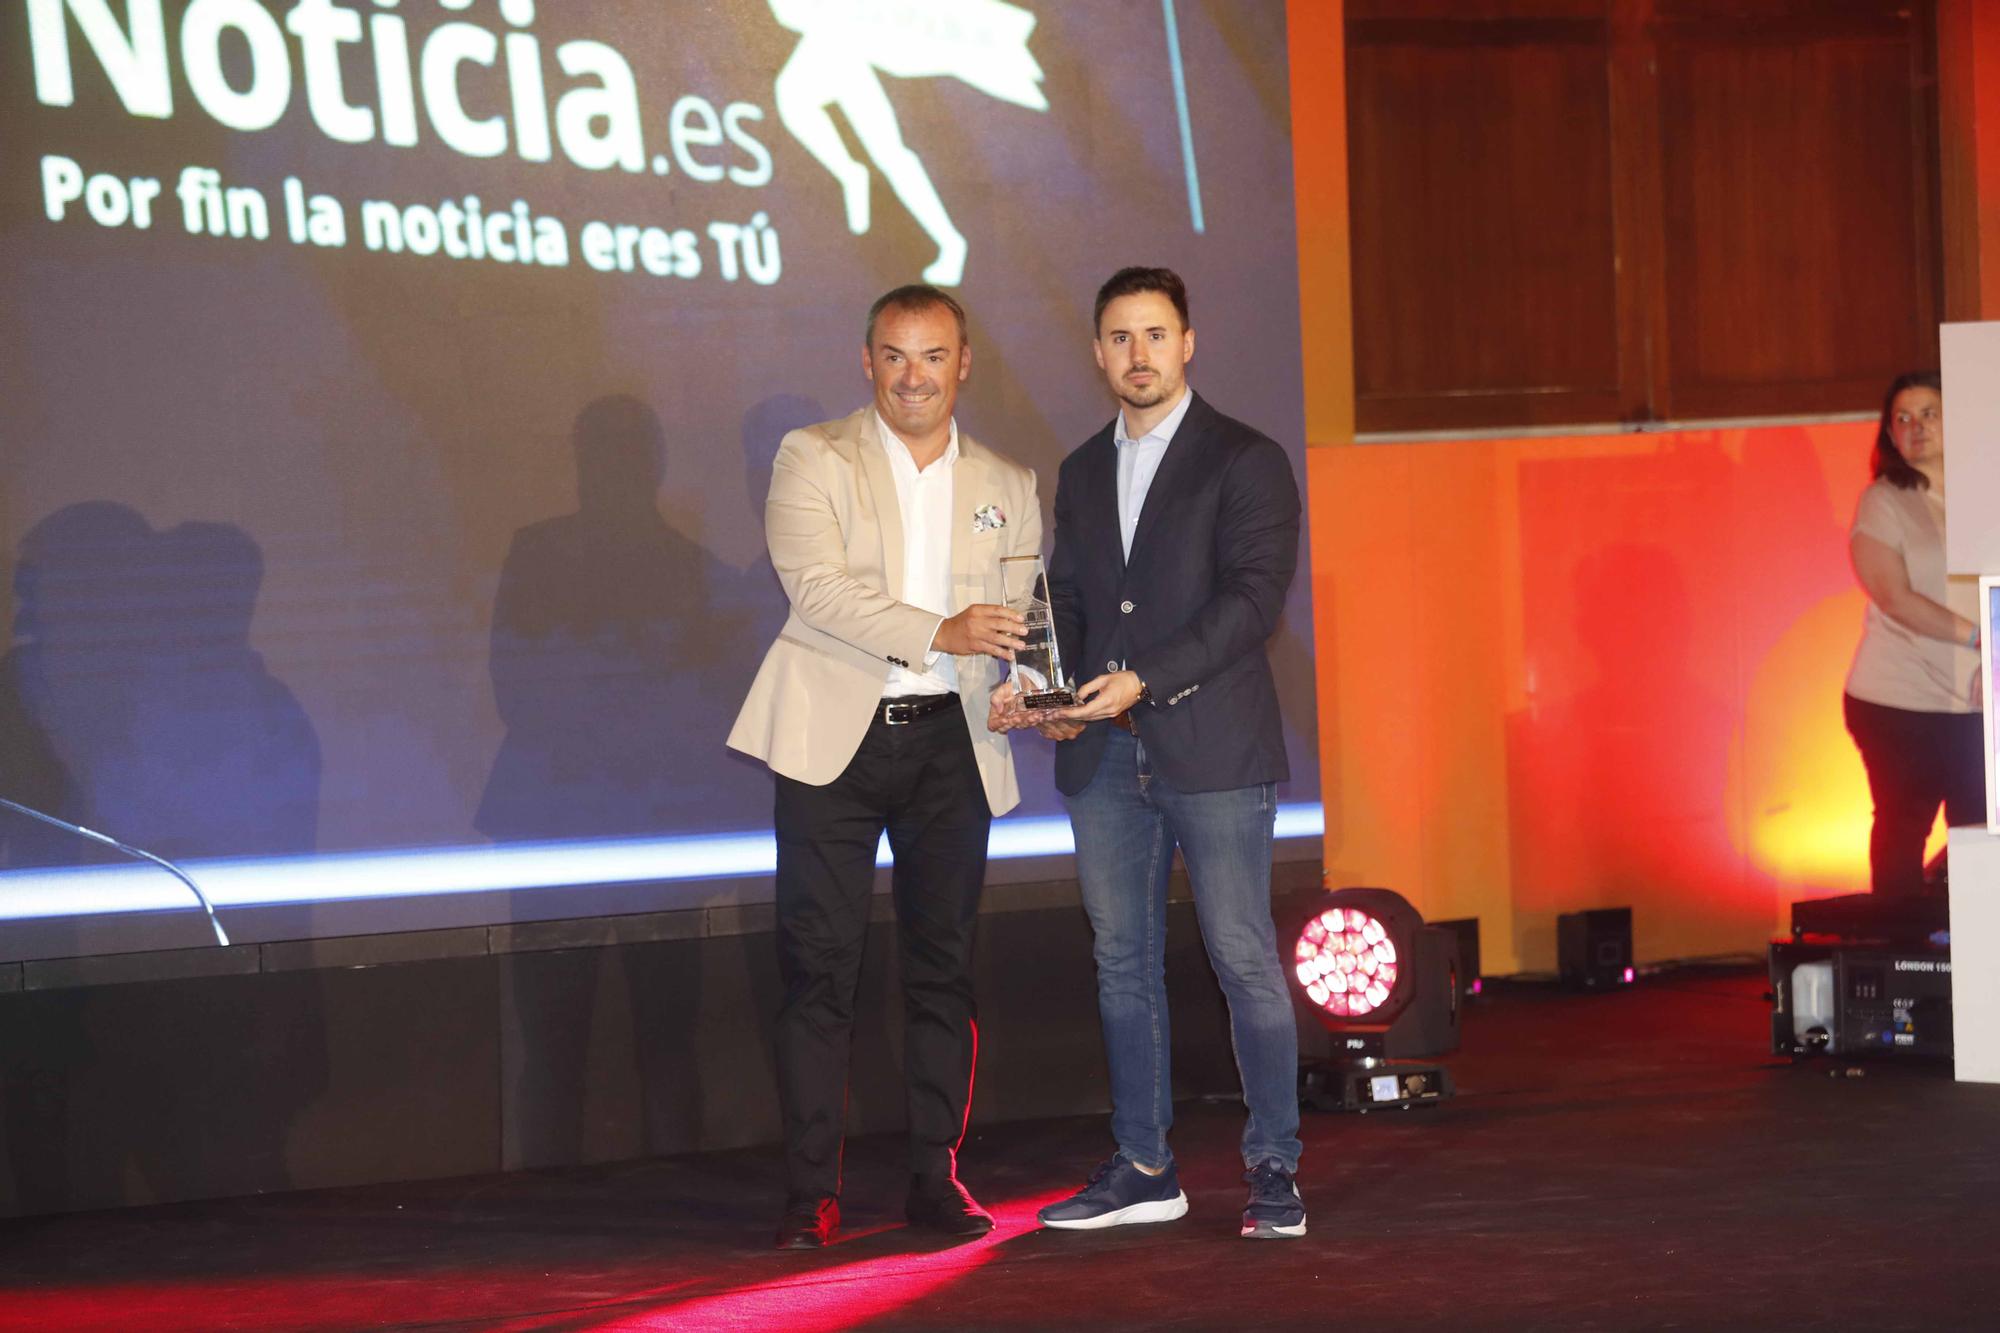 Premis al Mèrit Esportiu Ciutat de València 2021